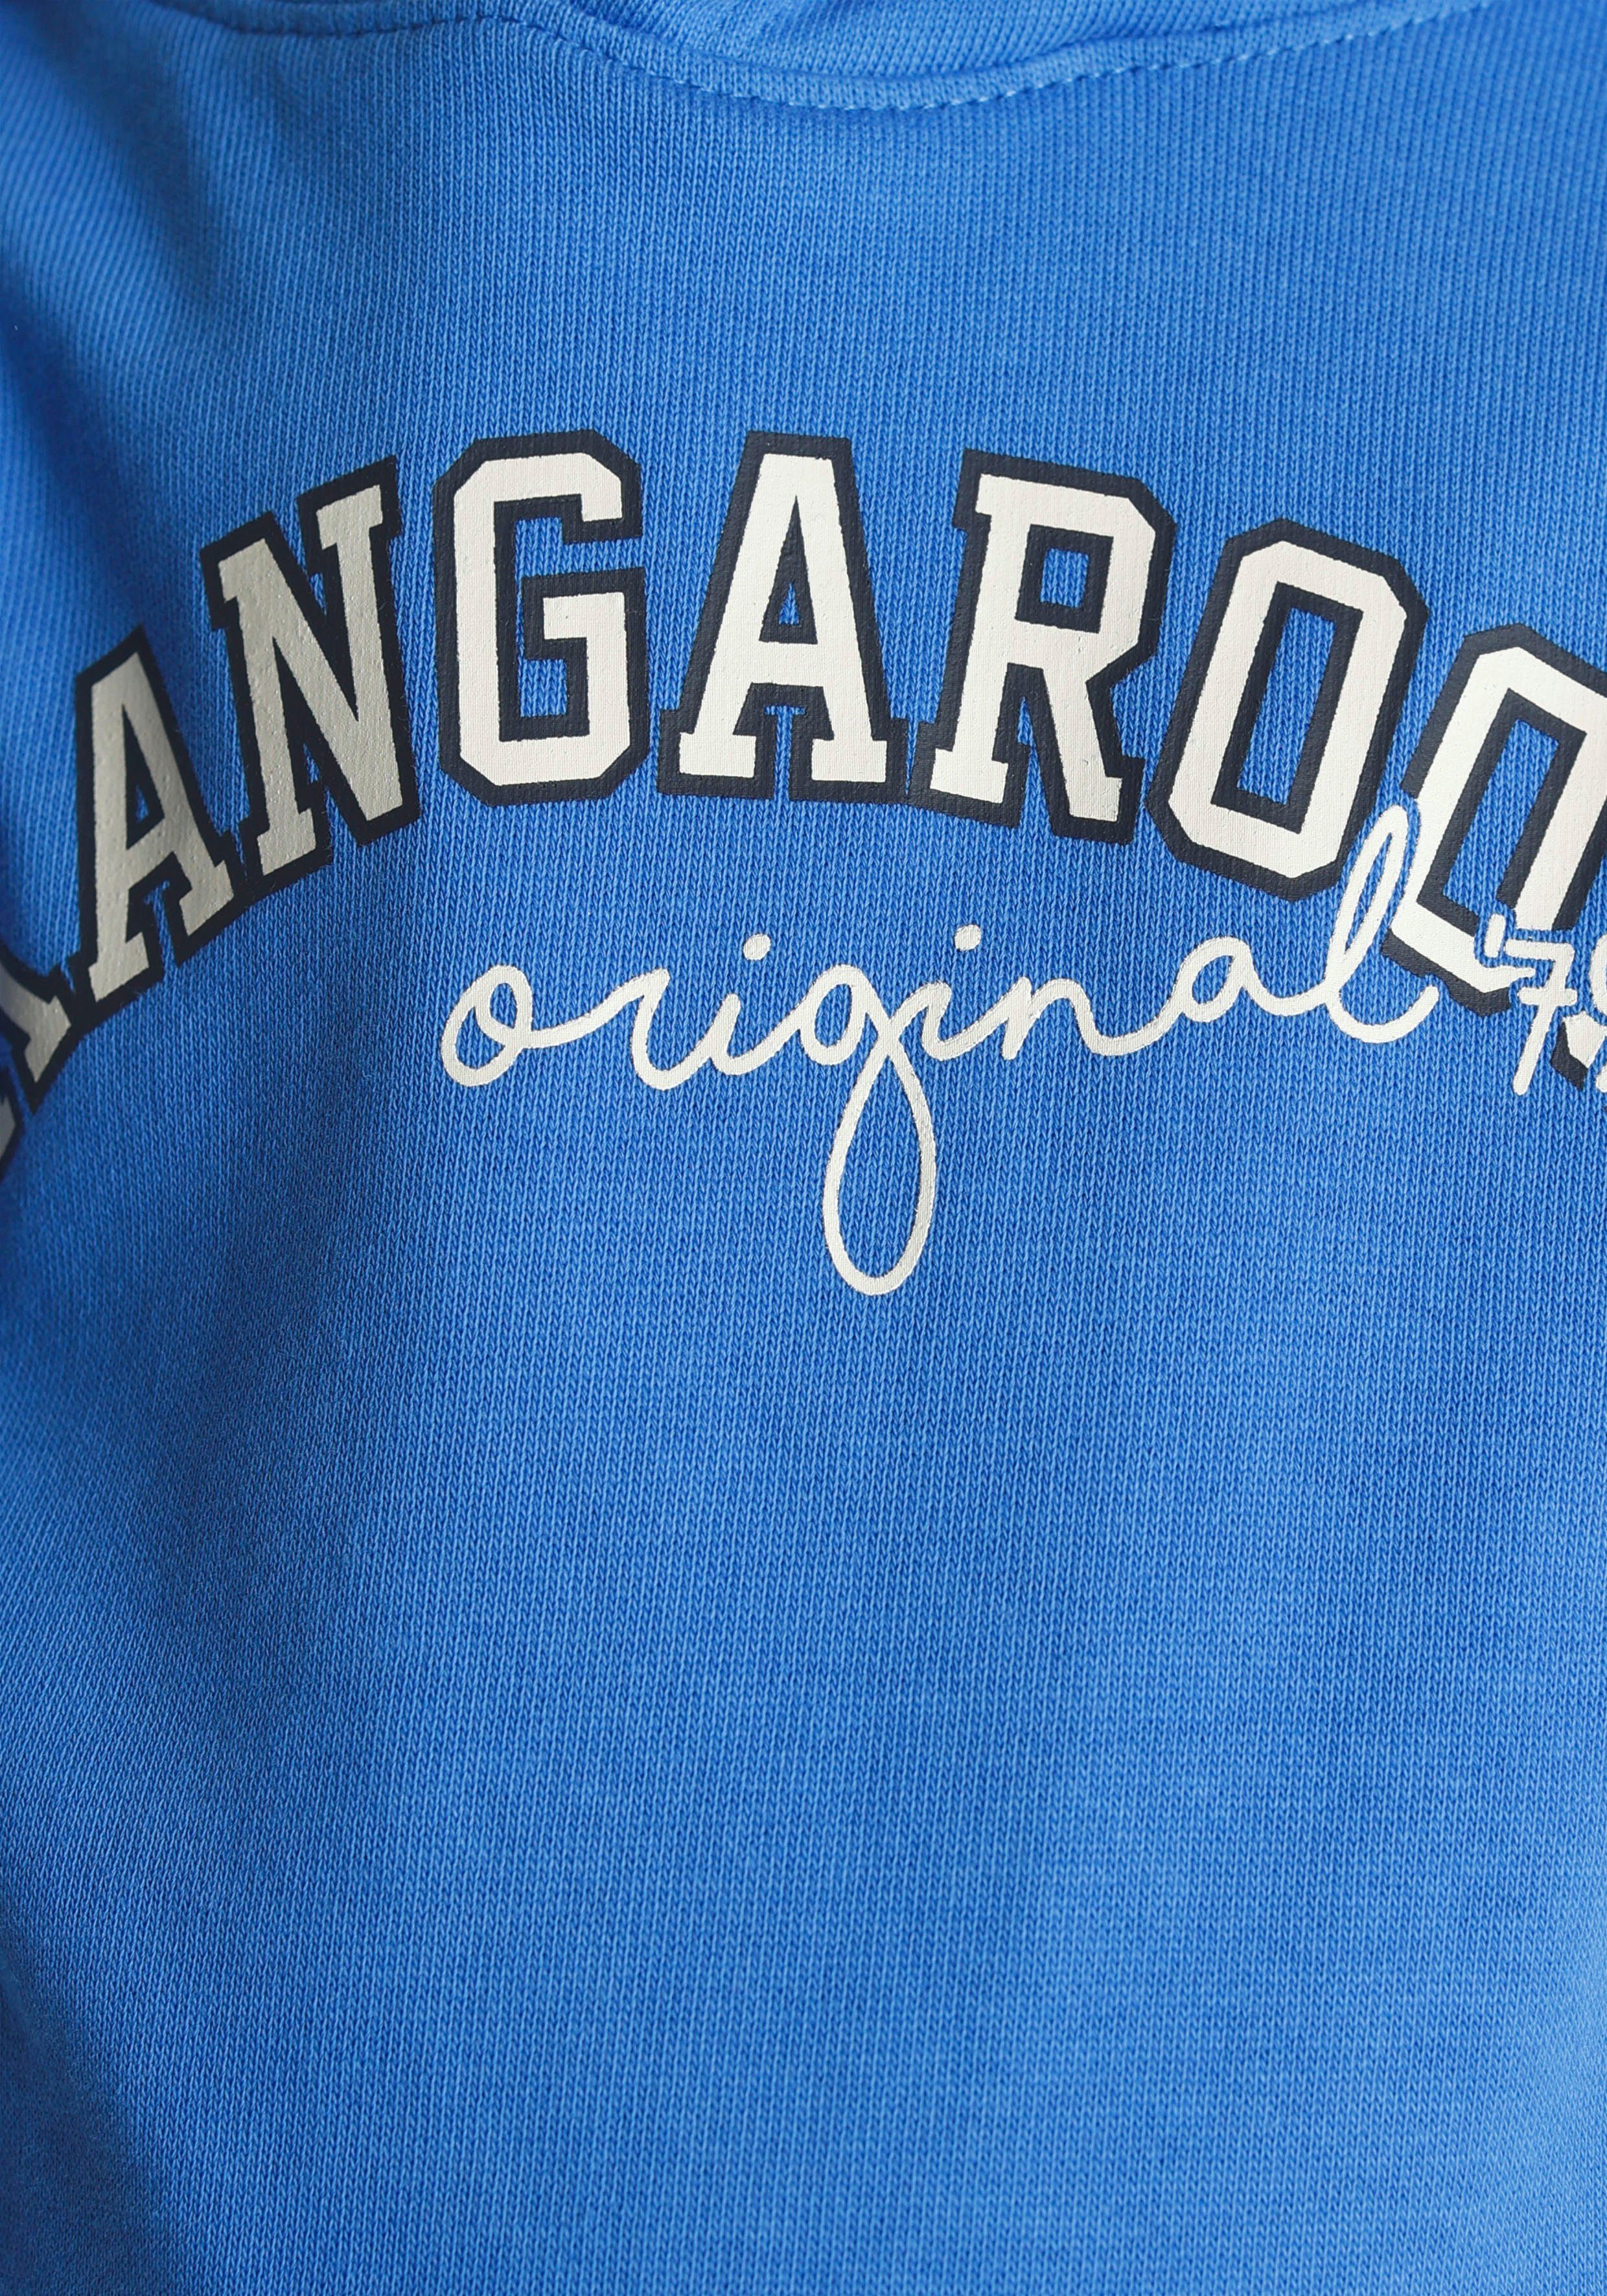 KangaROOS Kapuzensweatshirt Colorblocking, für Mini den mit Ärmeln, an Streifen Jungen